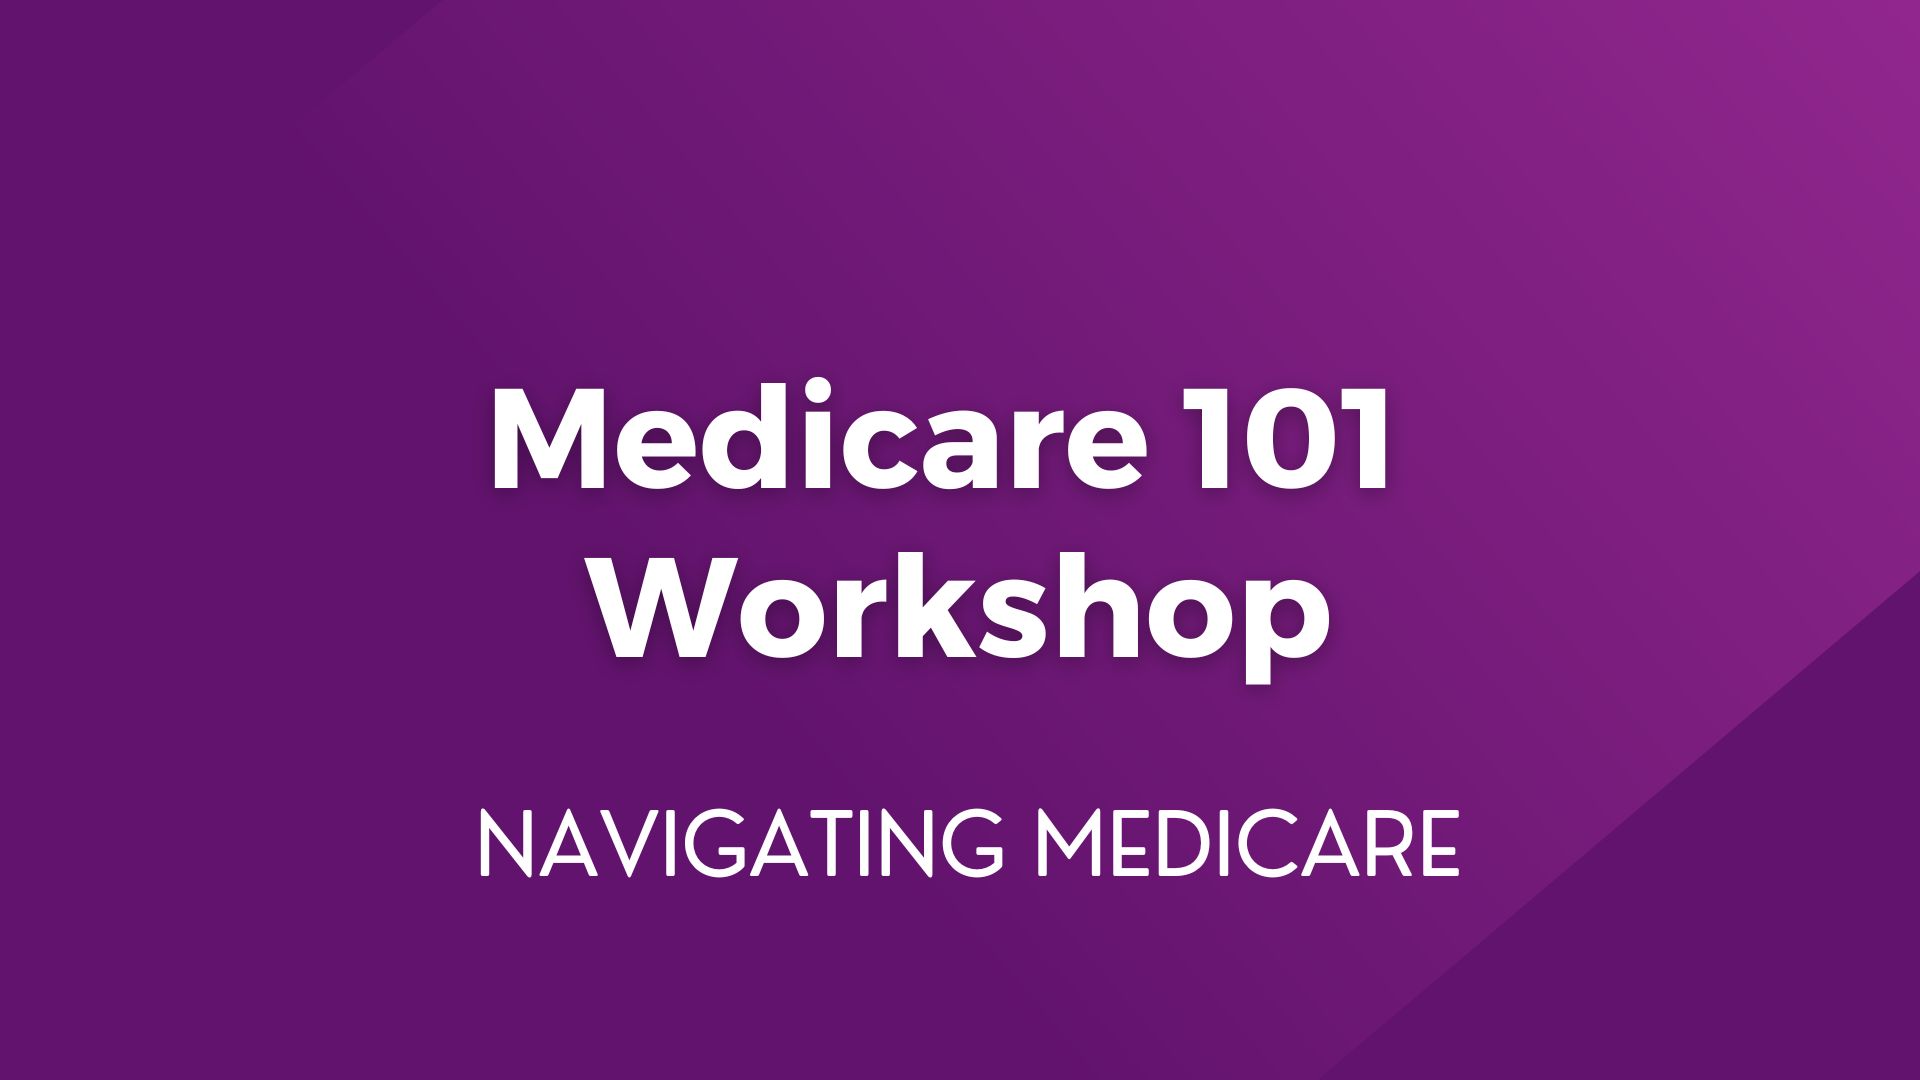 Medicare 101 Workshop – May 21